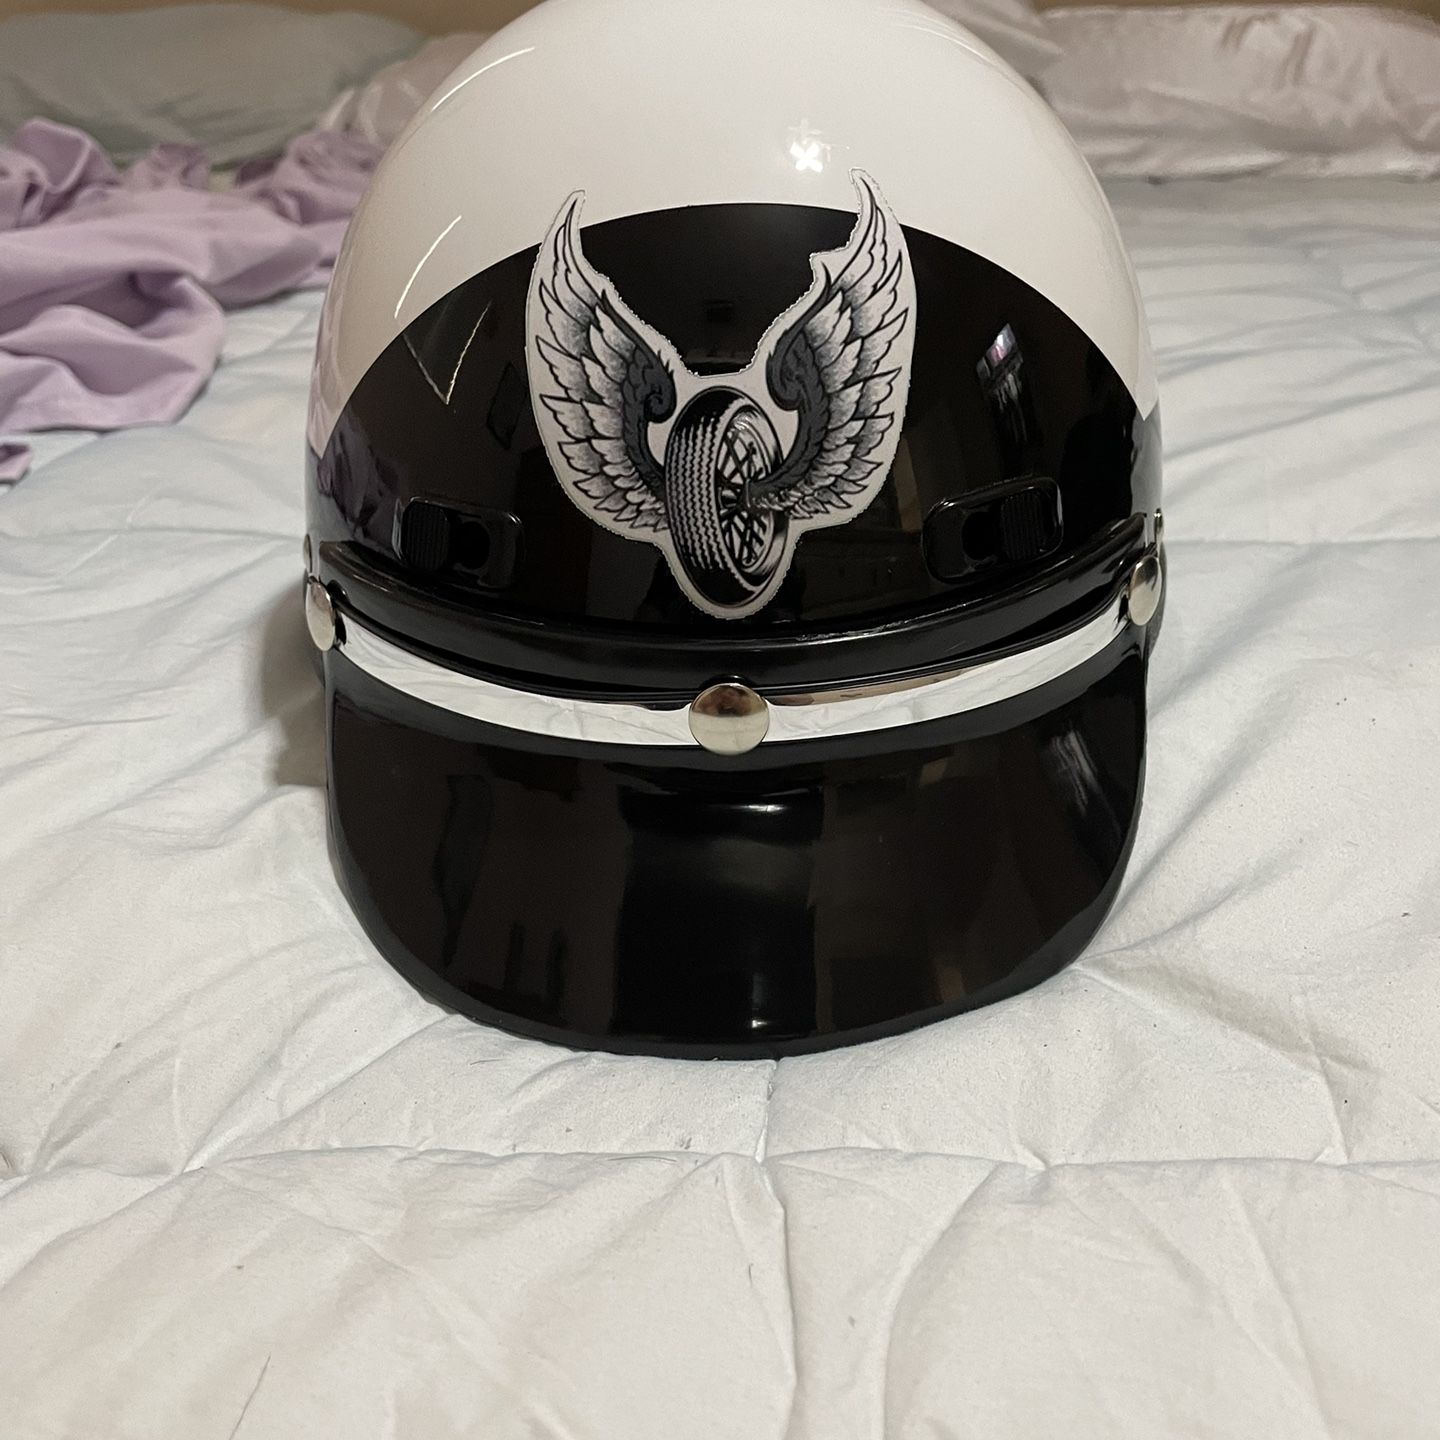 S2102 Seers Motor Officer Helmet 